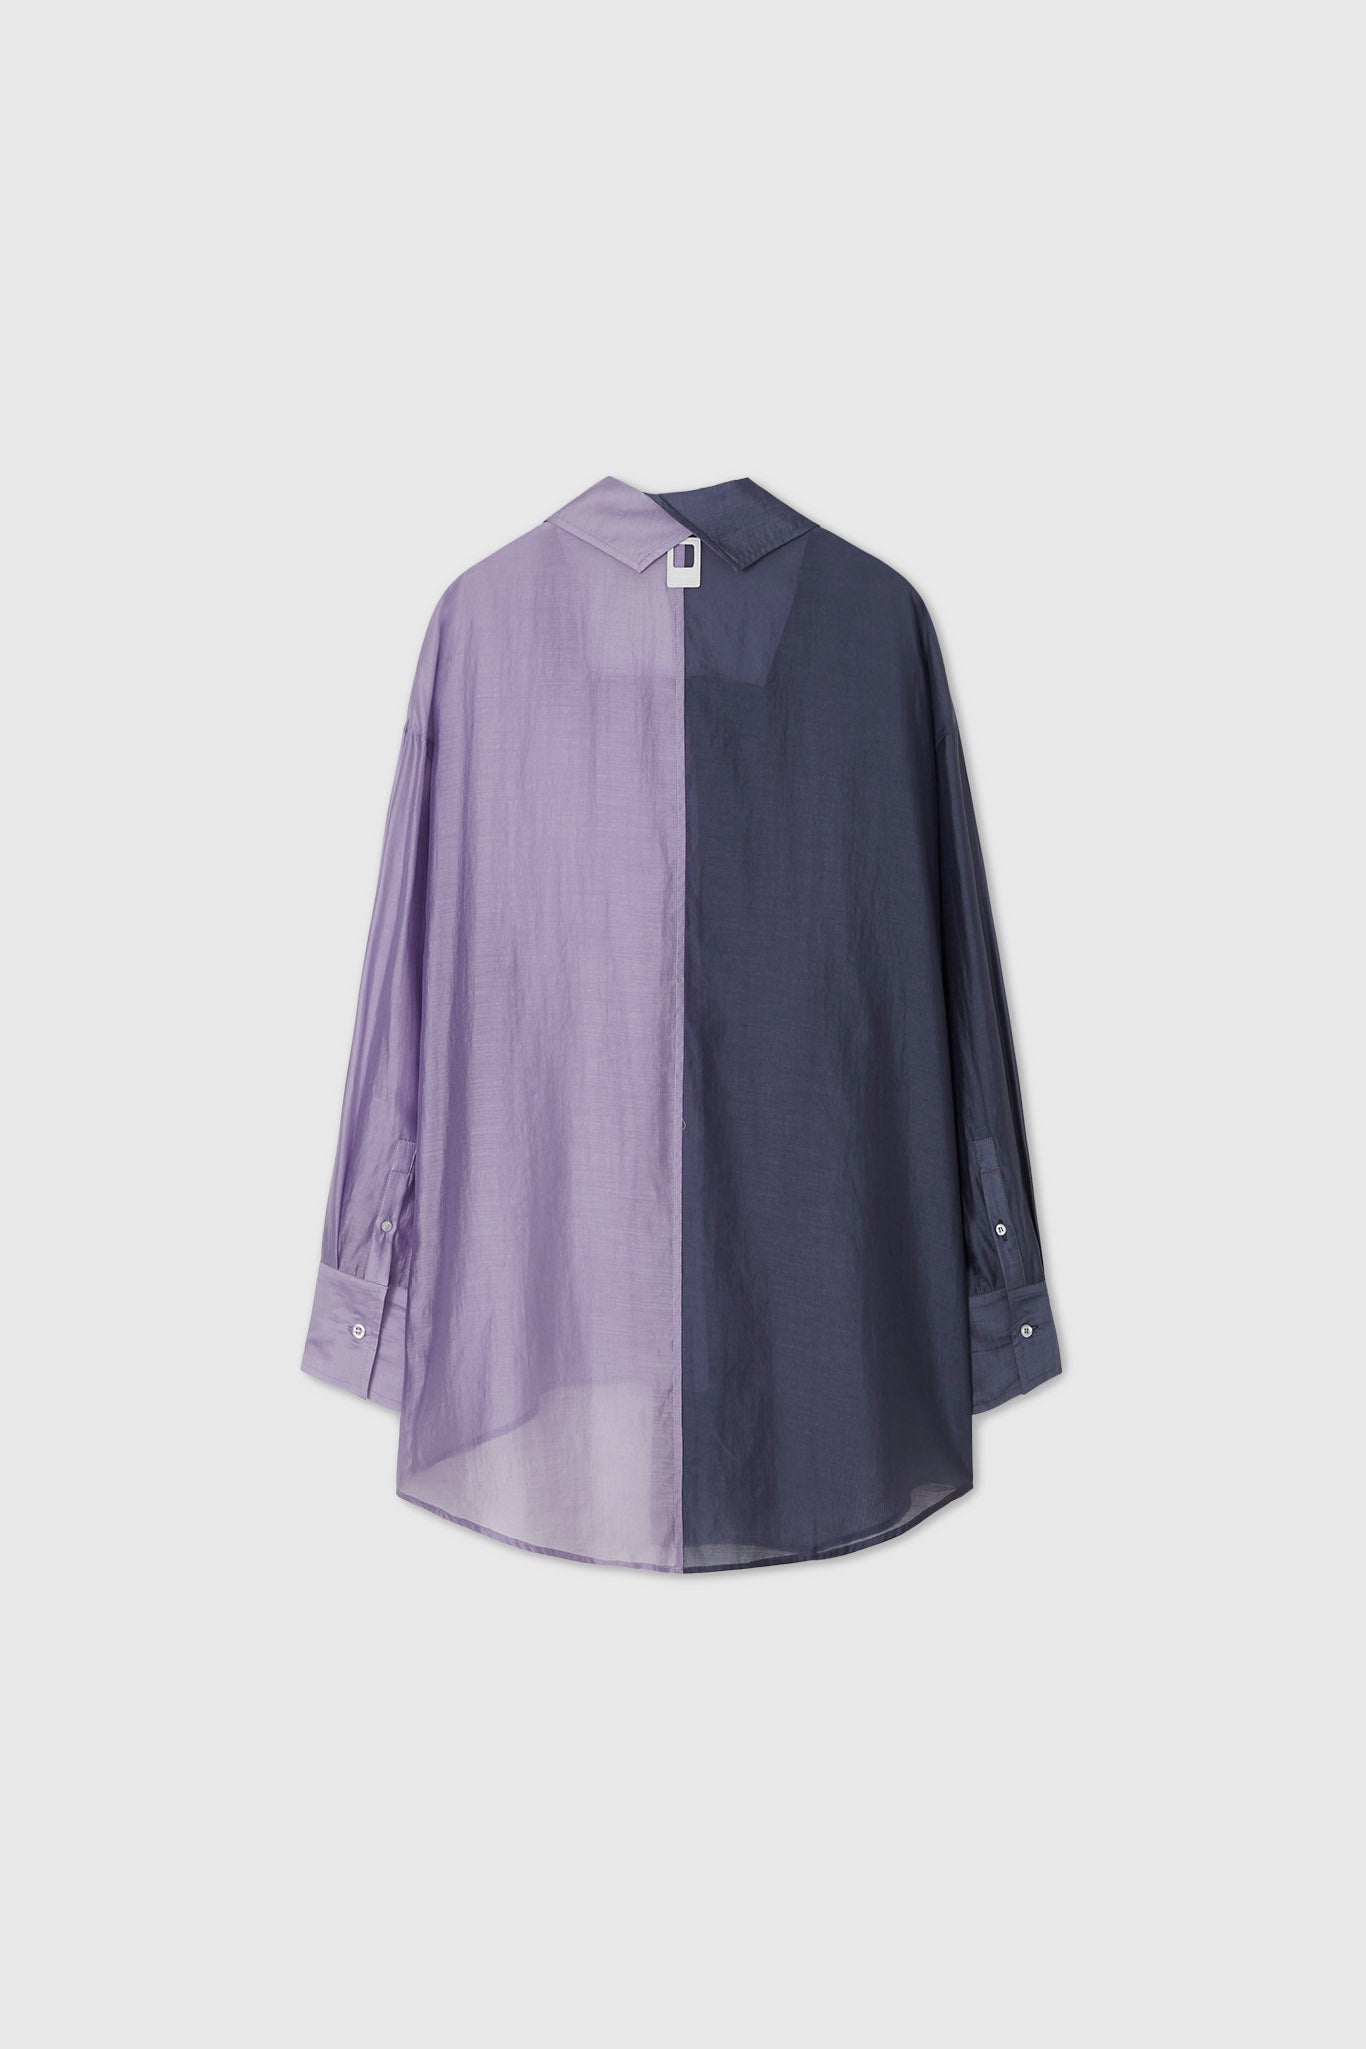 Bicolor asymmetric sheer shirt